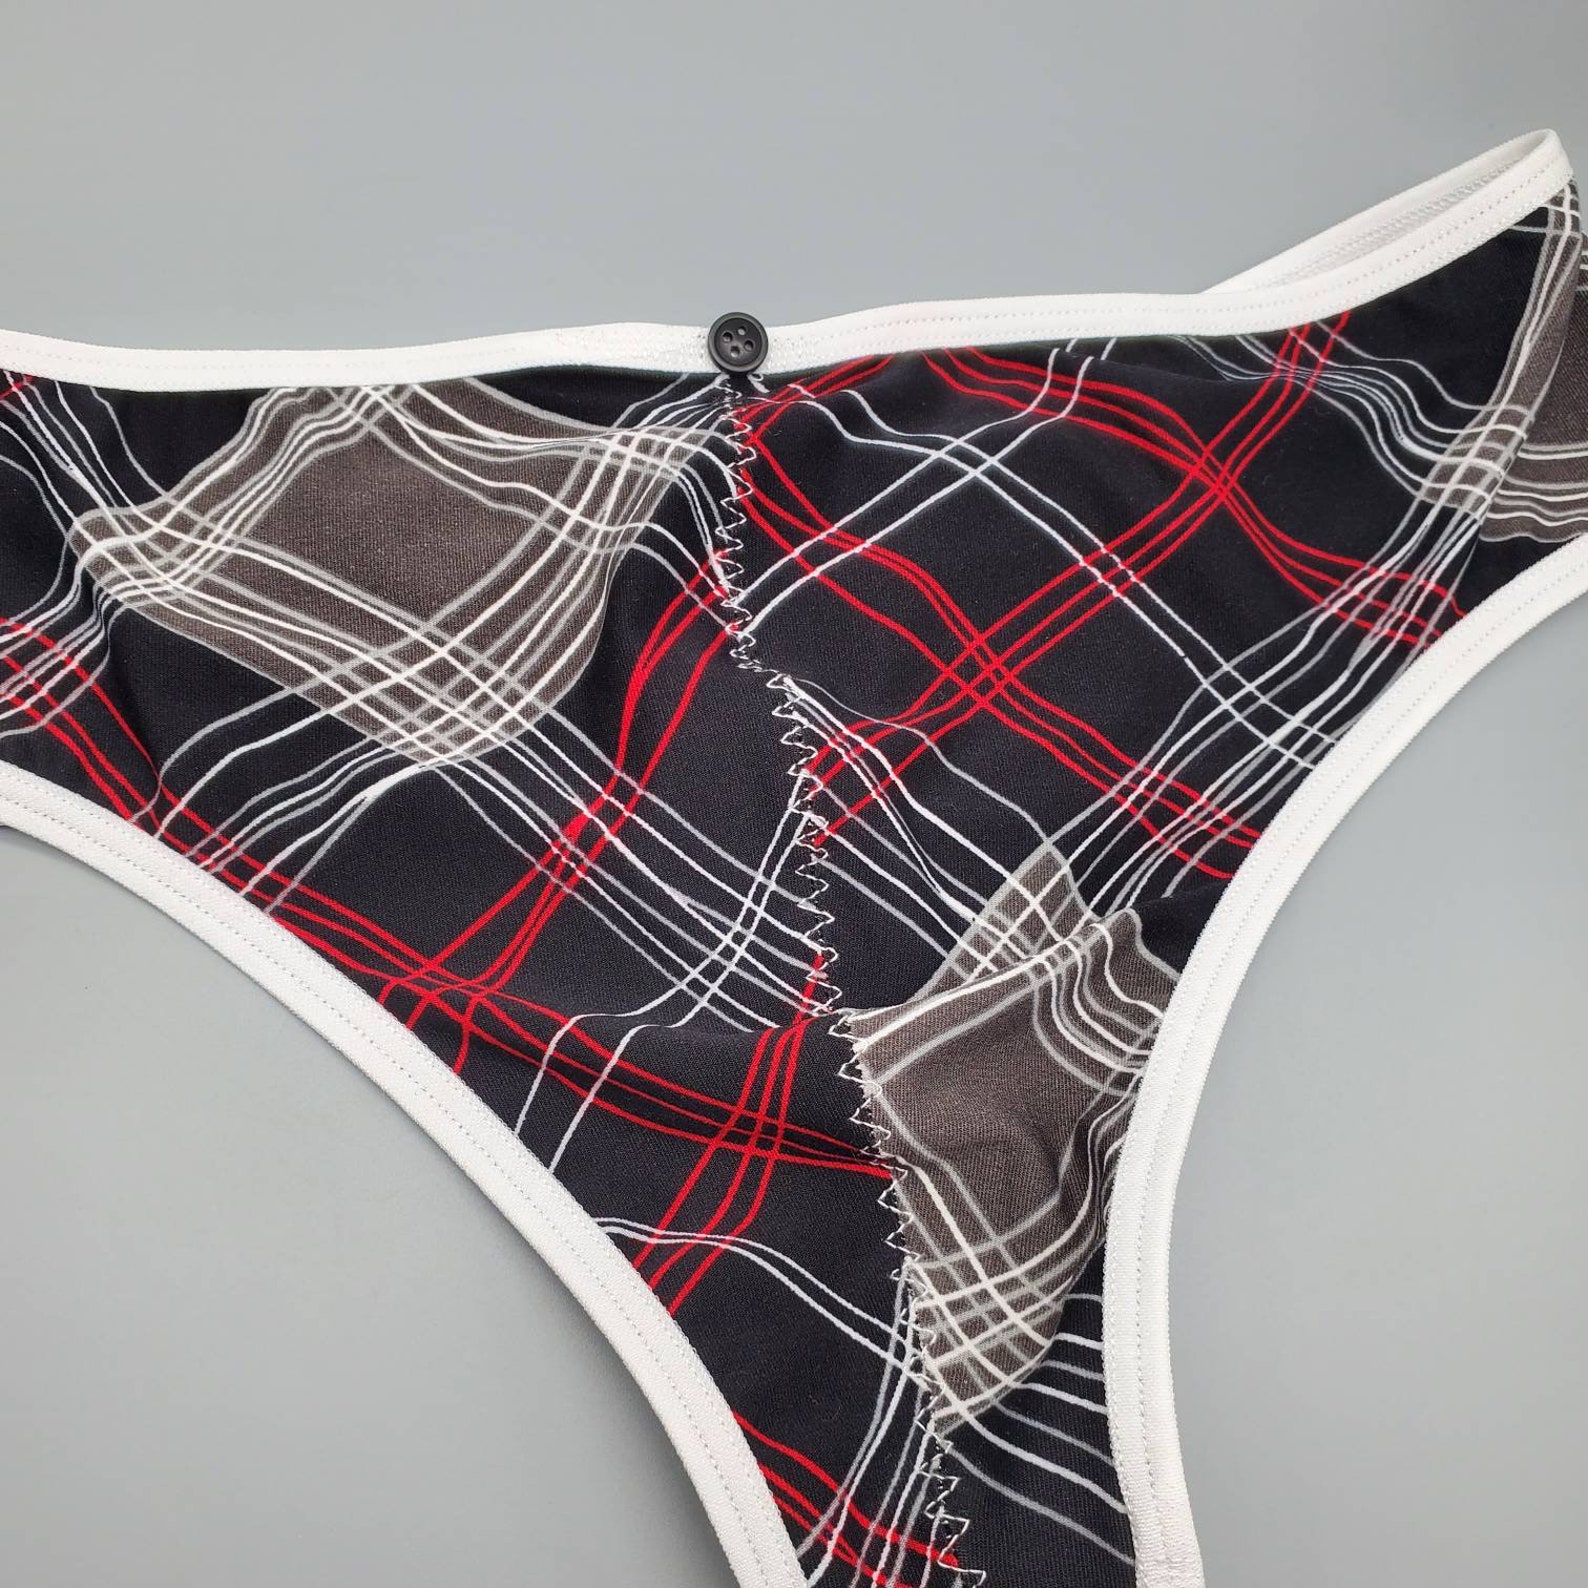 Man Thong Men's Thong Underwear Sexy Panties for Men Kinky | Etsy